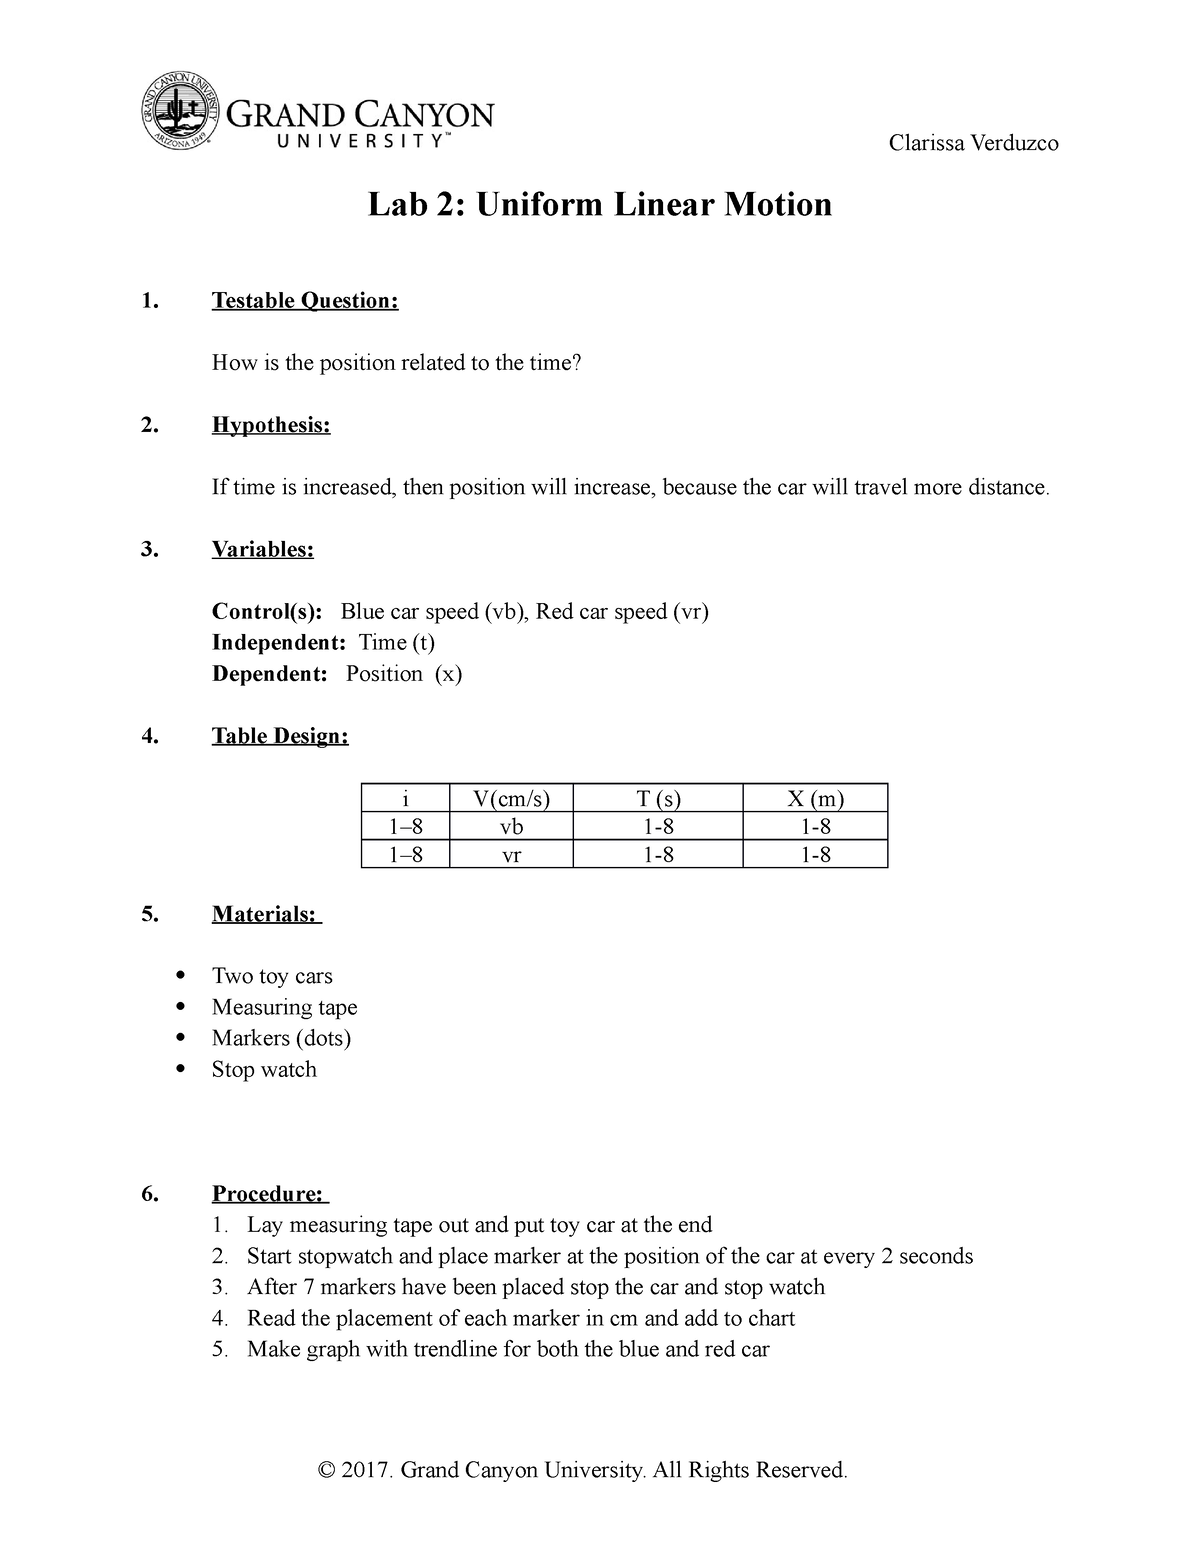 uniform linear motion lab report